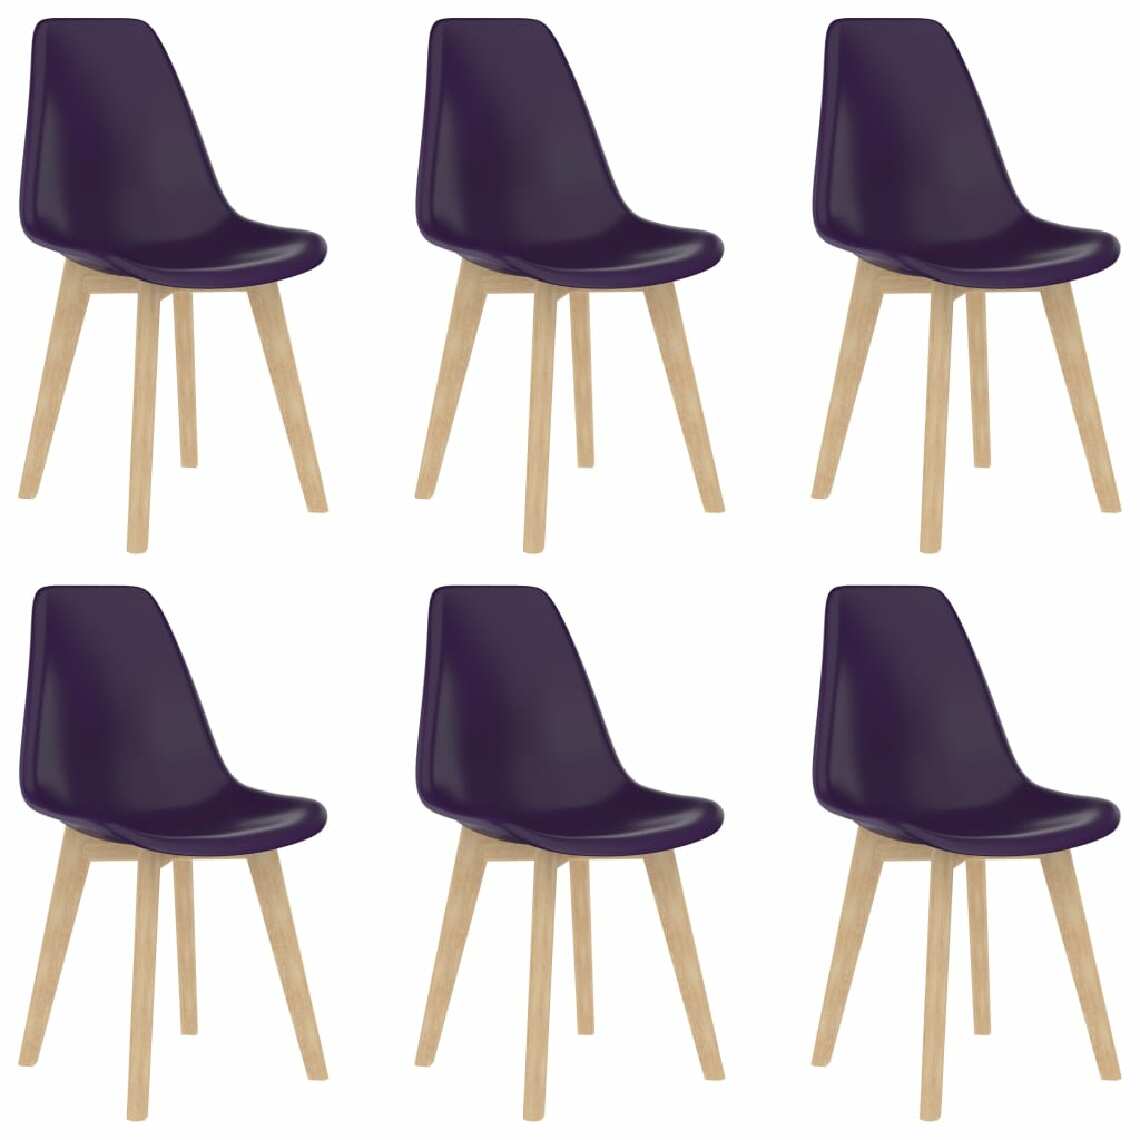 Chunhelife - Chunhelife Chaises de salle à manger 6 pcs Violet Plastique - Chaises